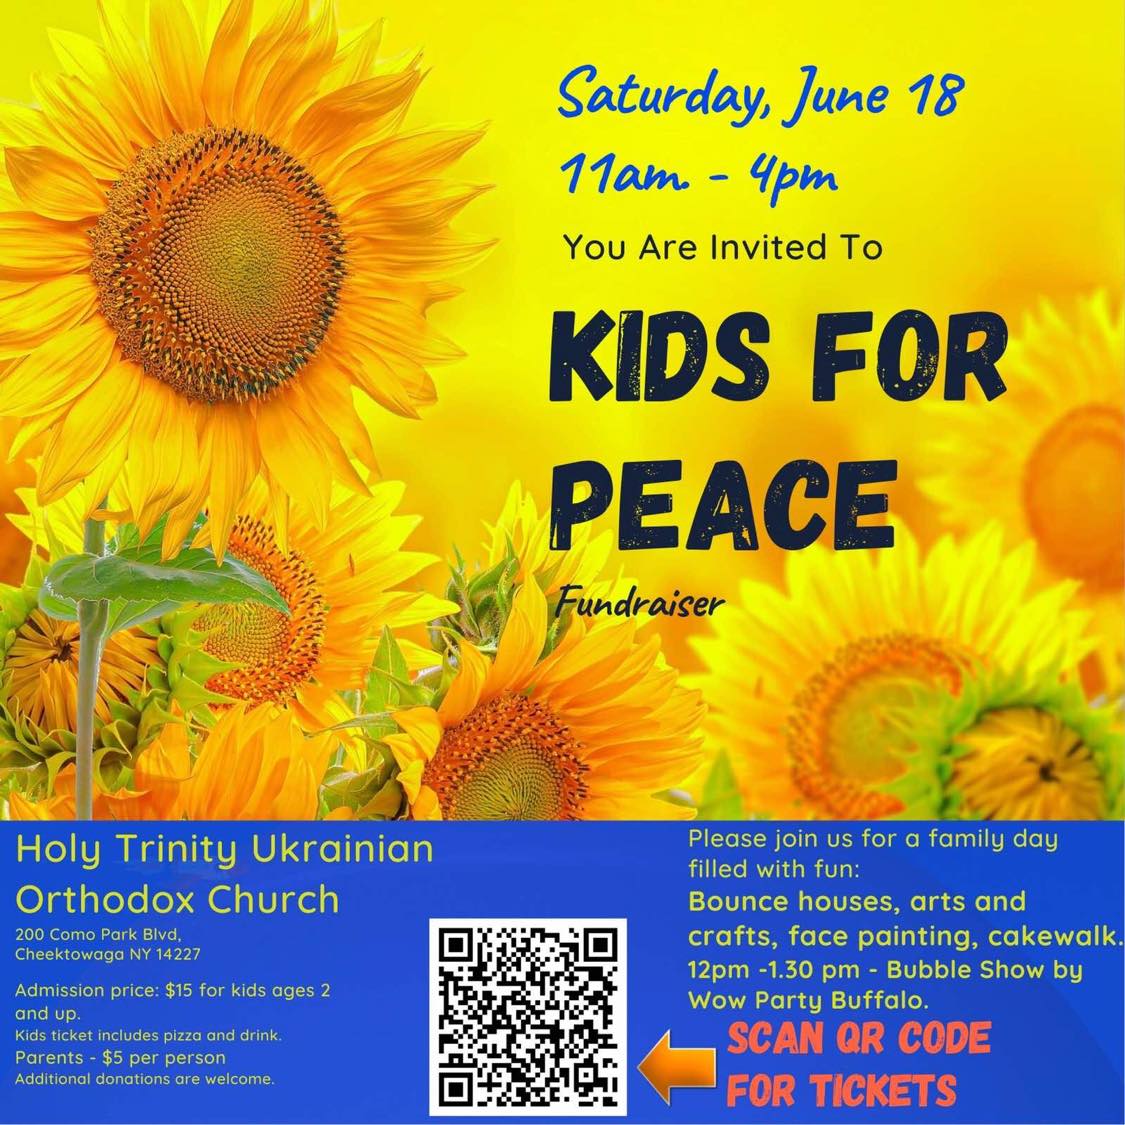 kids-for-peace.jpg - 186.57 kB